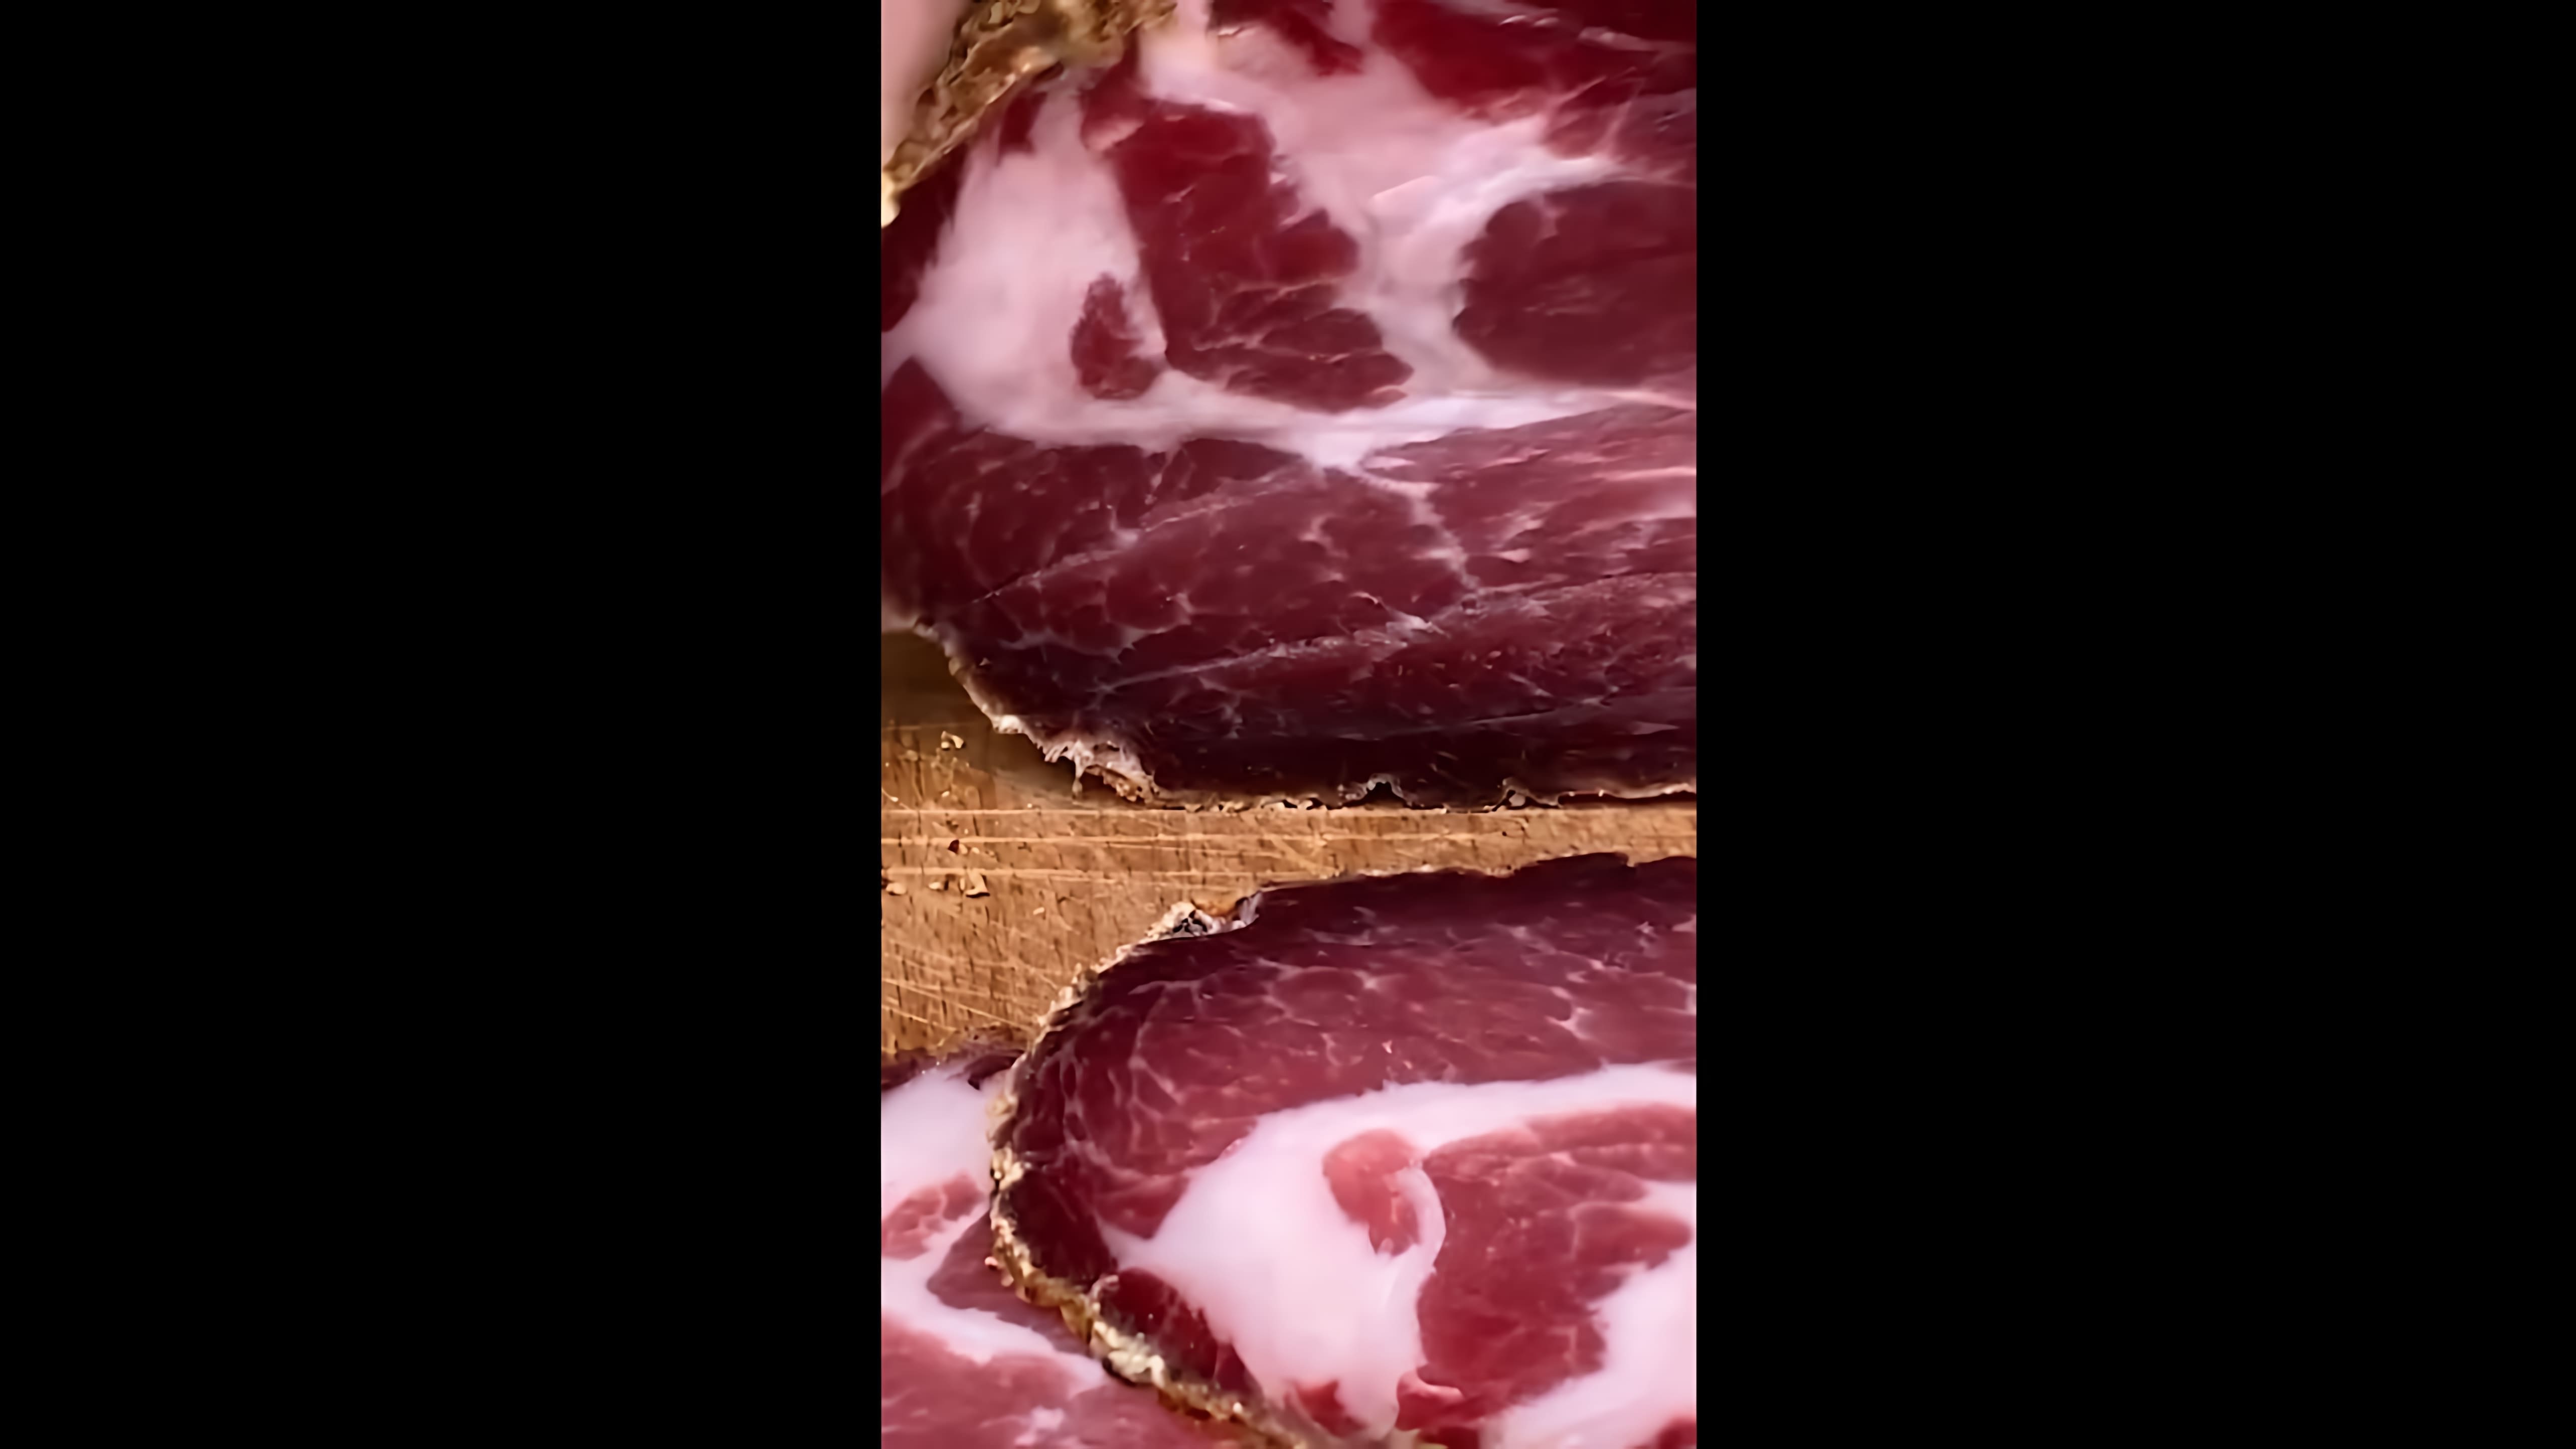 В этом видео-ролике демонстрируется процесс приготовления вяленой свиной шеи, также известной как Coppa или capocollo